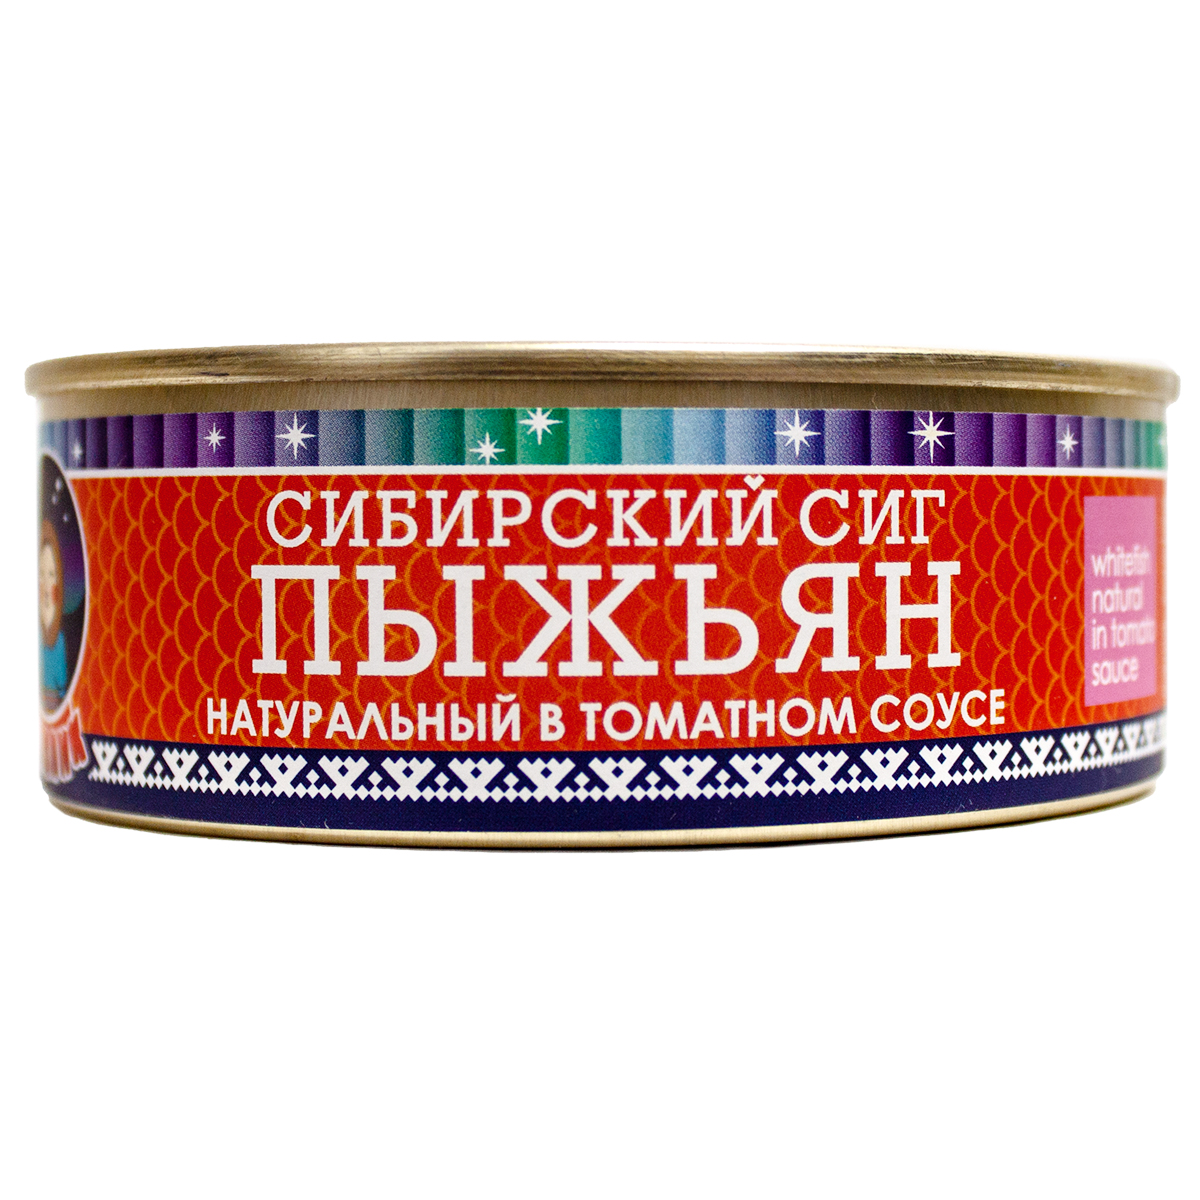 Рыбные консервы ТМ Ямалик пыжьян сибирский сиг натуральный в томатном соусе 240 г